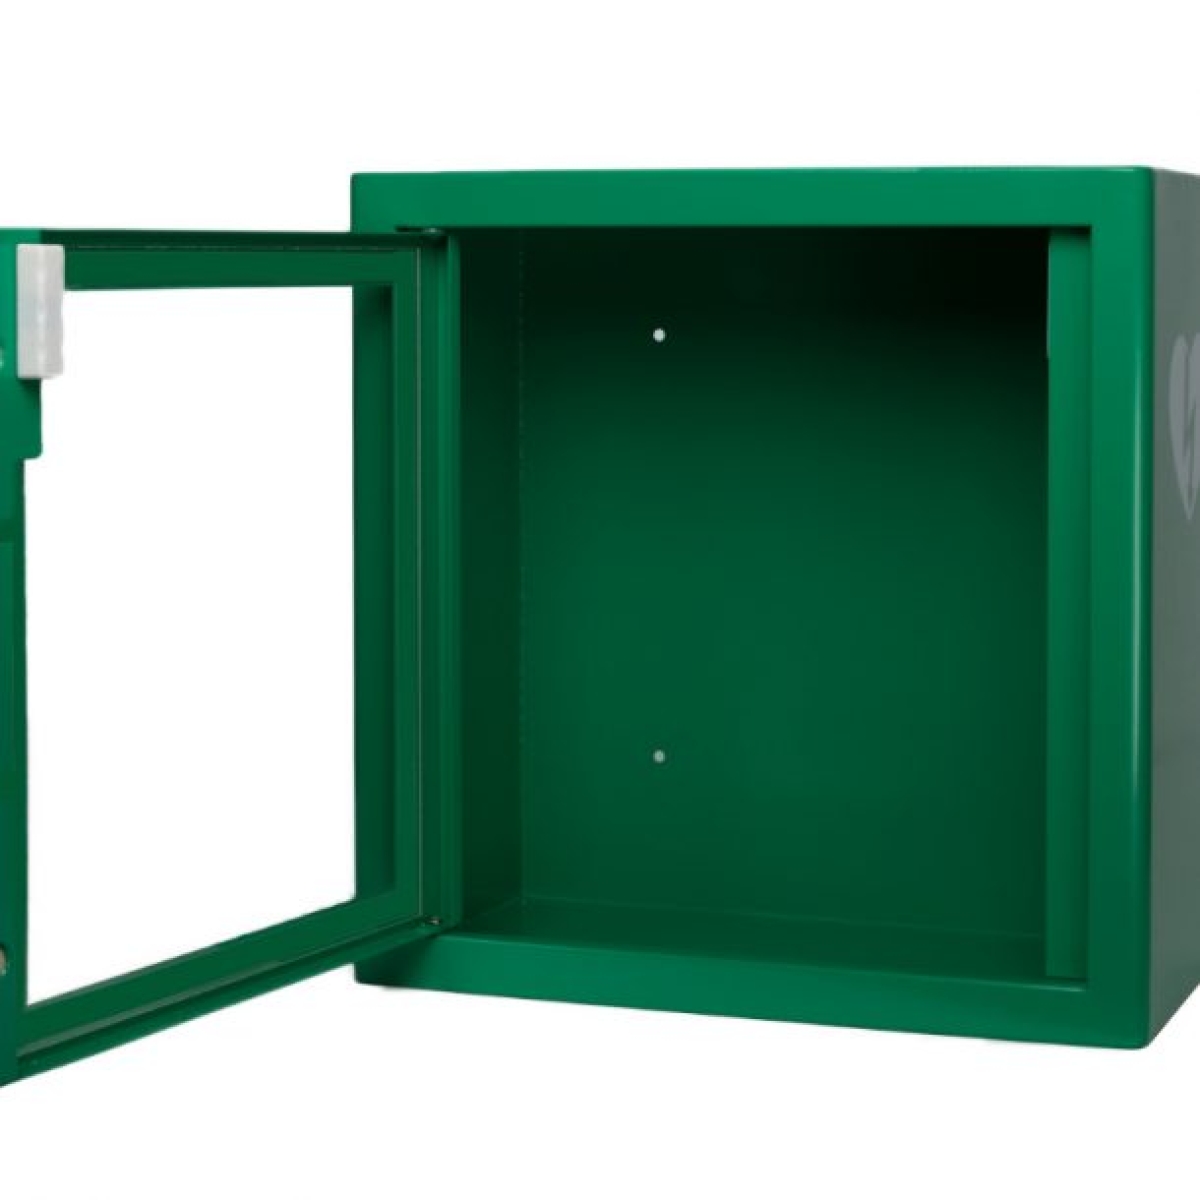 Armoire d'intérieur Arky verte pour défibrillateur 